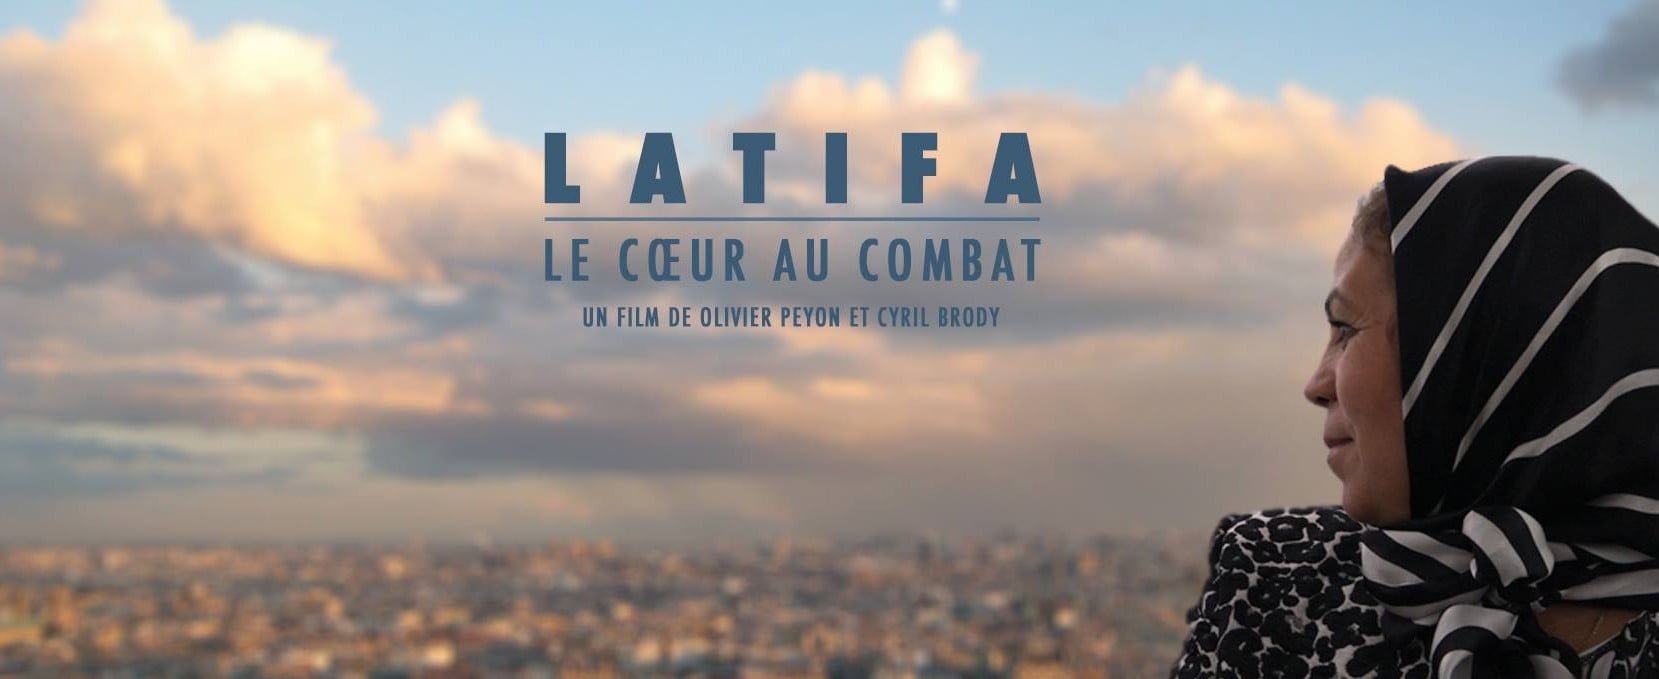 Latifa couv e1461502877604 Sorties Documentaires: octobre 2017